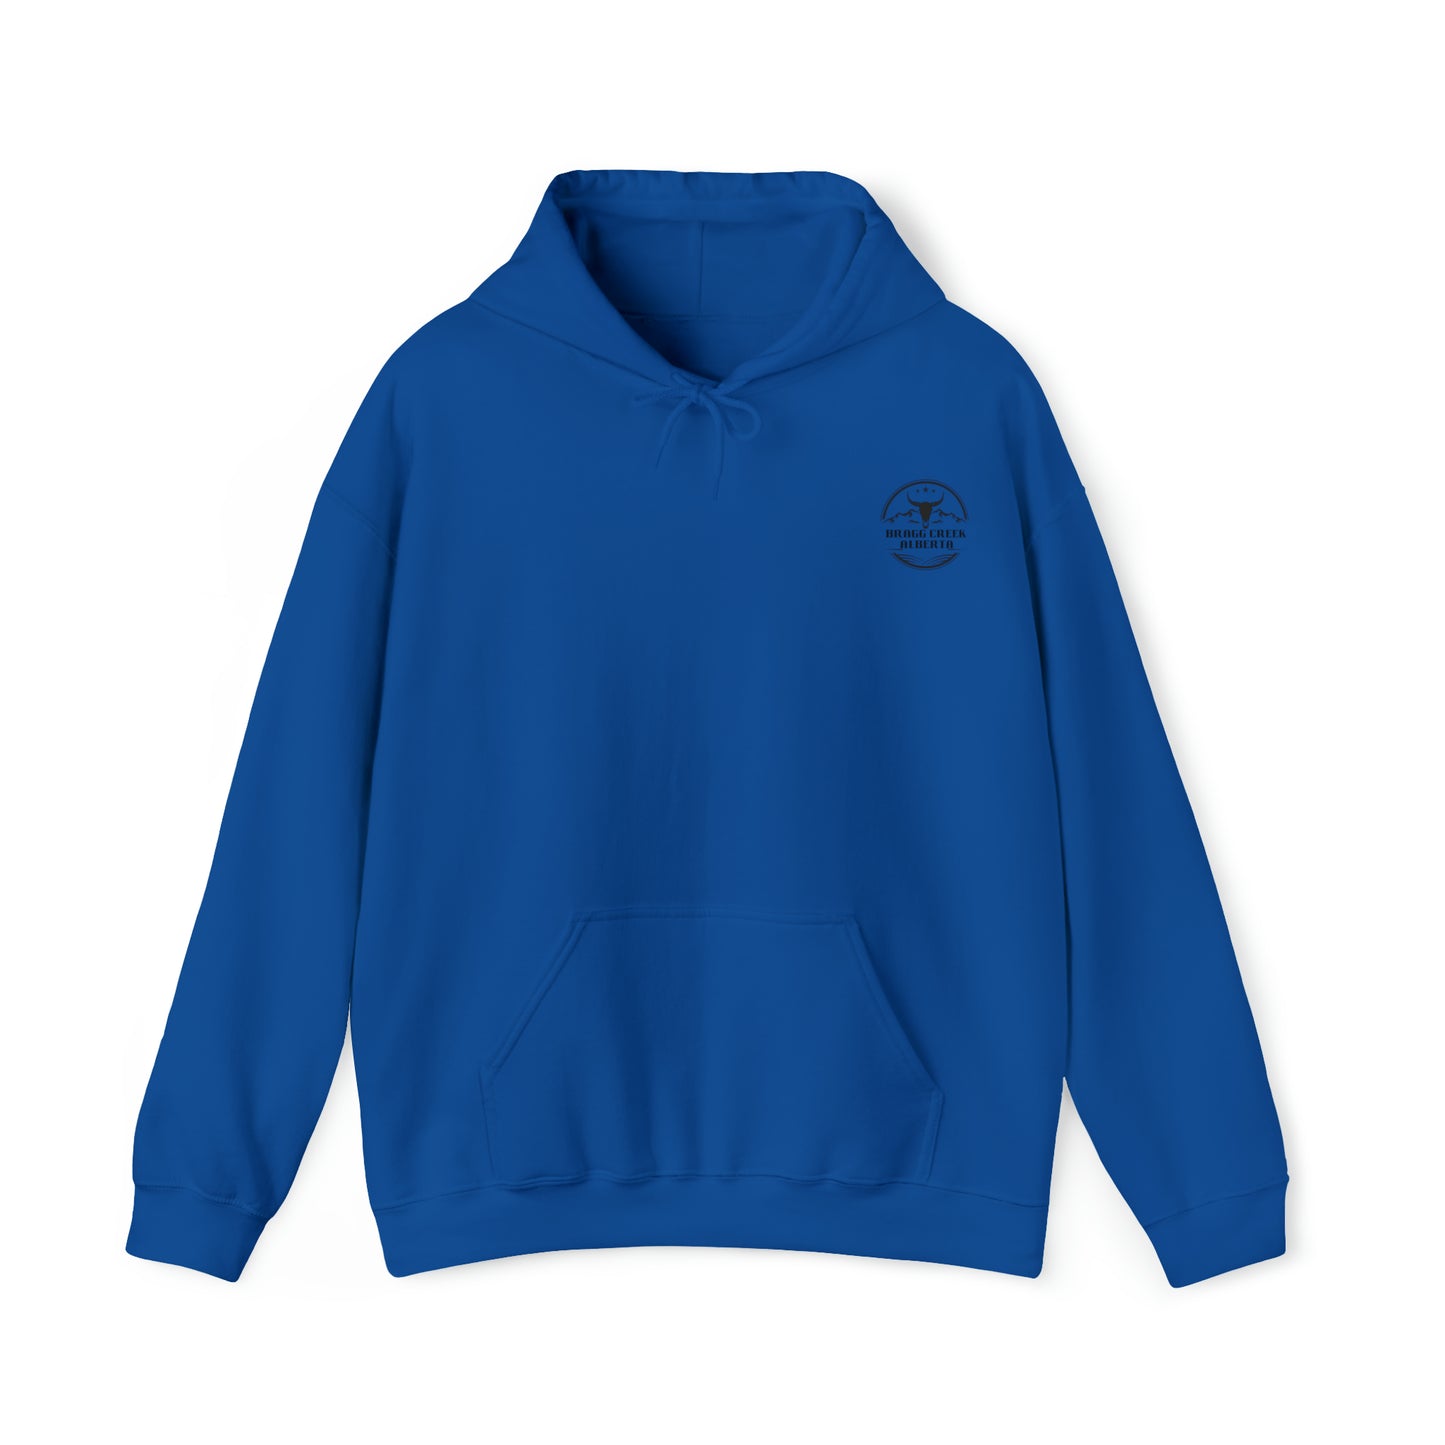 Bragg Creek Alberta Hoodie- Unisex Heavy Blend™ Hooded Sweatshirt